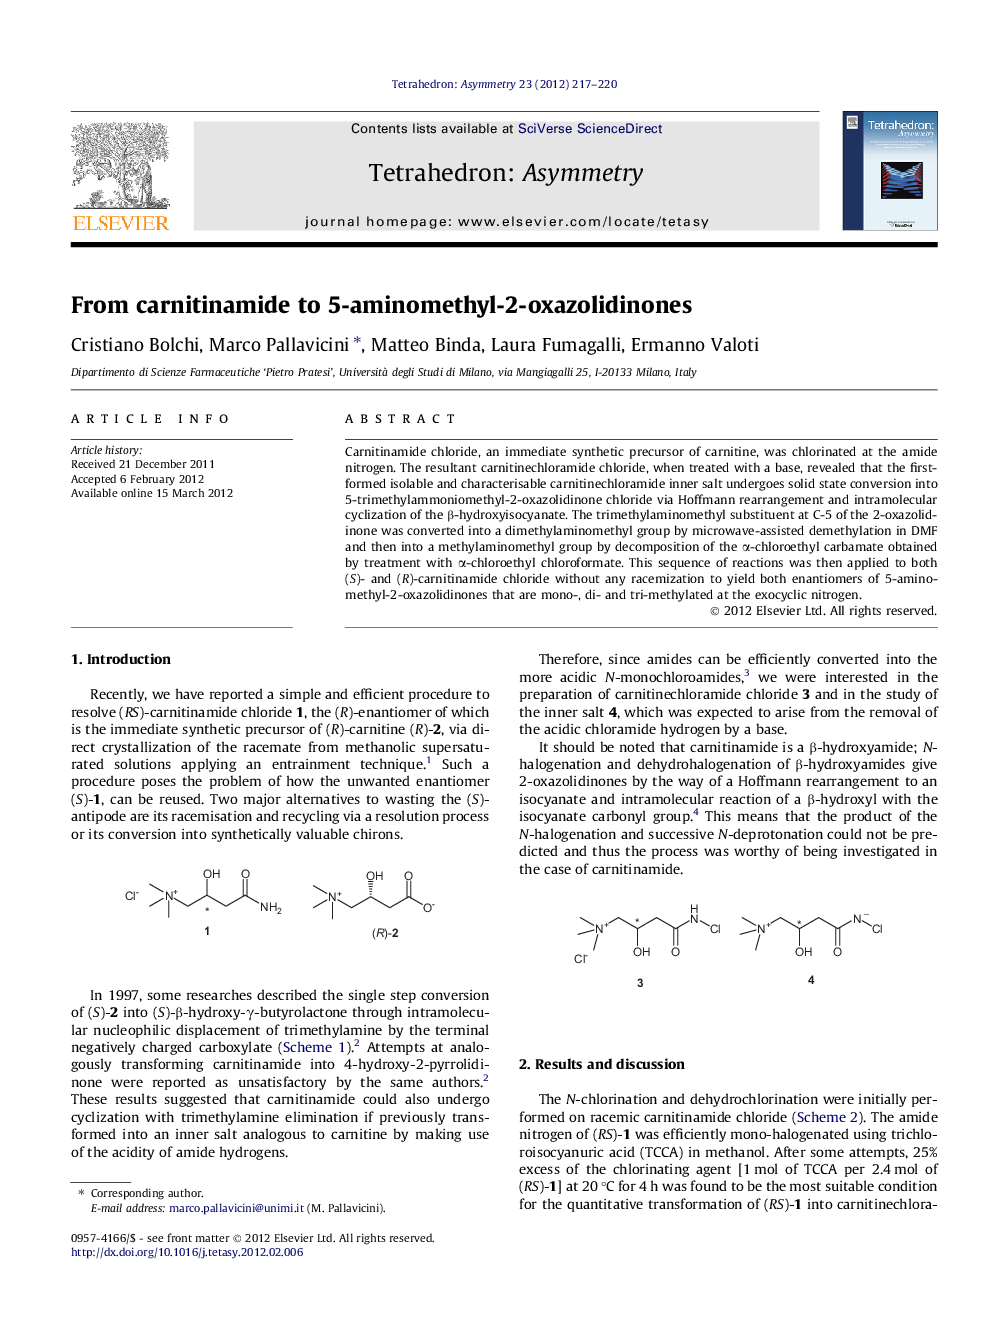 From carnitinamide to 5-aminomethyl-2-oxazolidinones